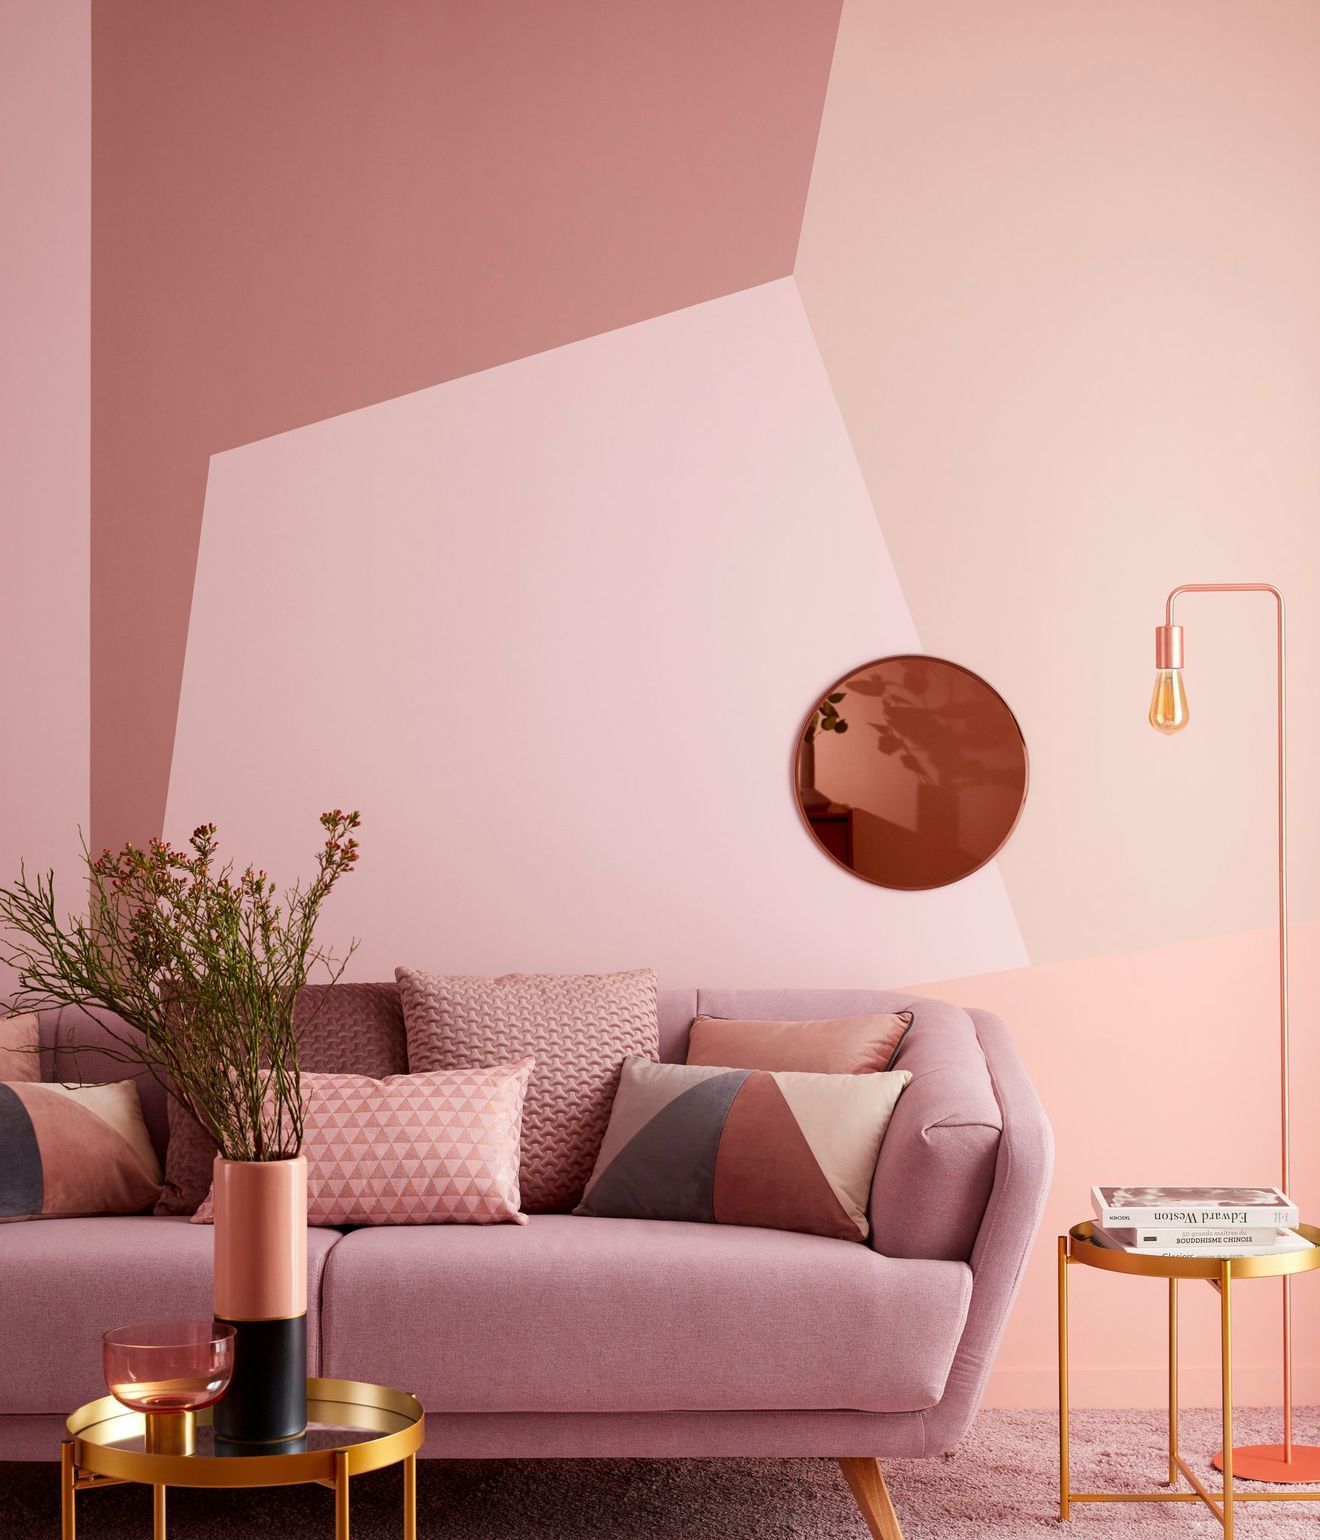 Sala com pintura geométrica, composta por diferentes tons de rosa.